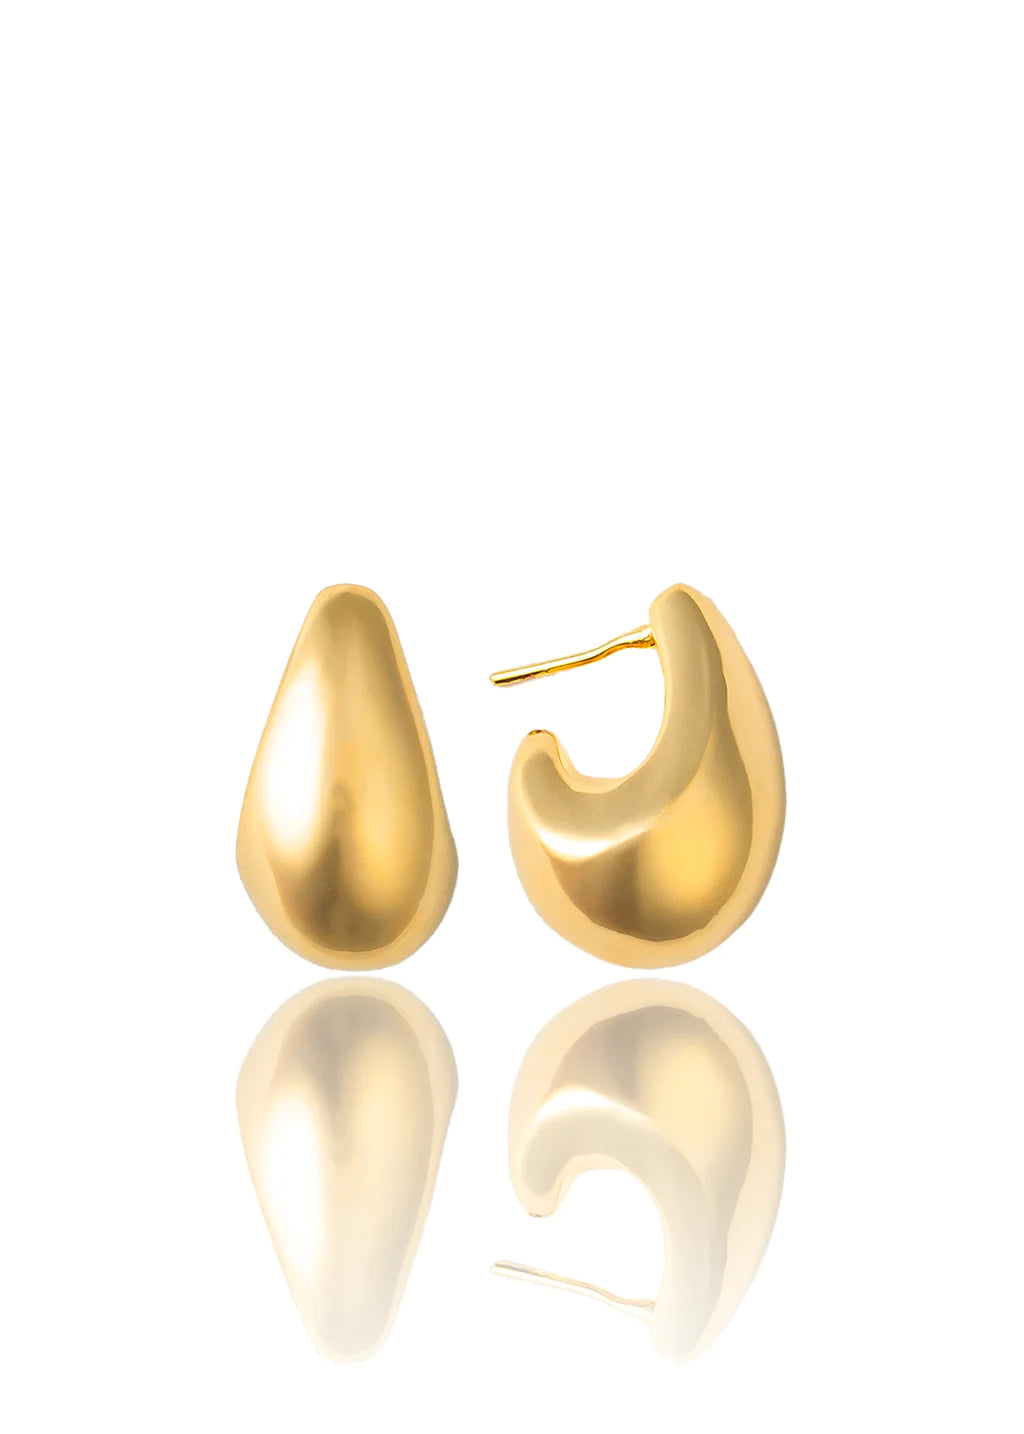 Small Tear Drop Earrings In 18K Yellow Gold